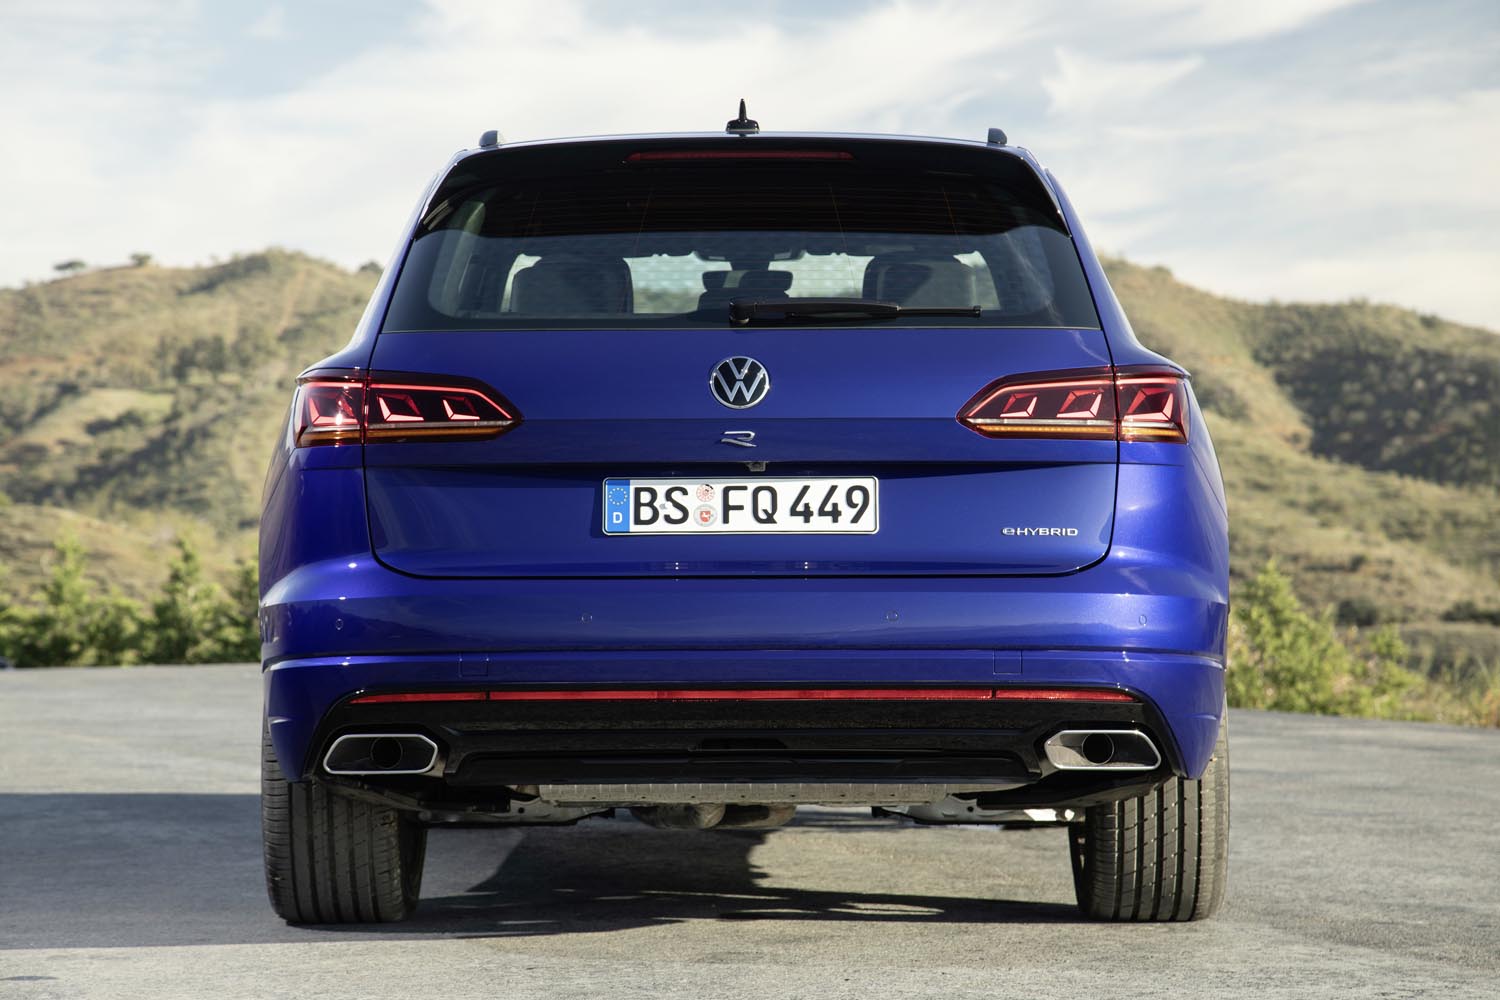 Envergando o estilizado 'R' ao centro do portão traseiro e logo abaixo do duplo V, o Volkswagen Touareg R não esconde, sequer, a designação Hybrid